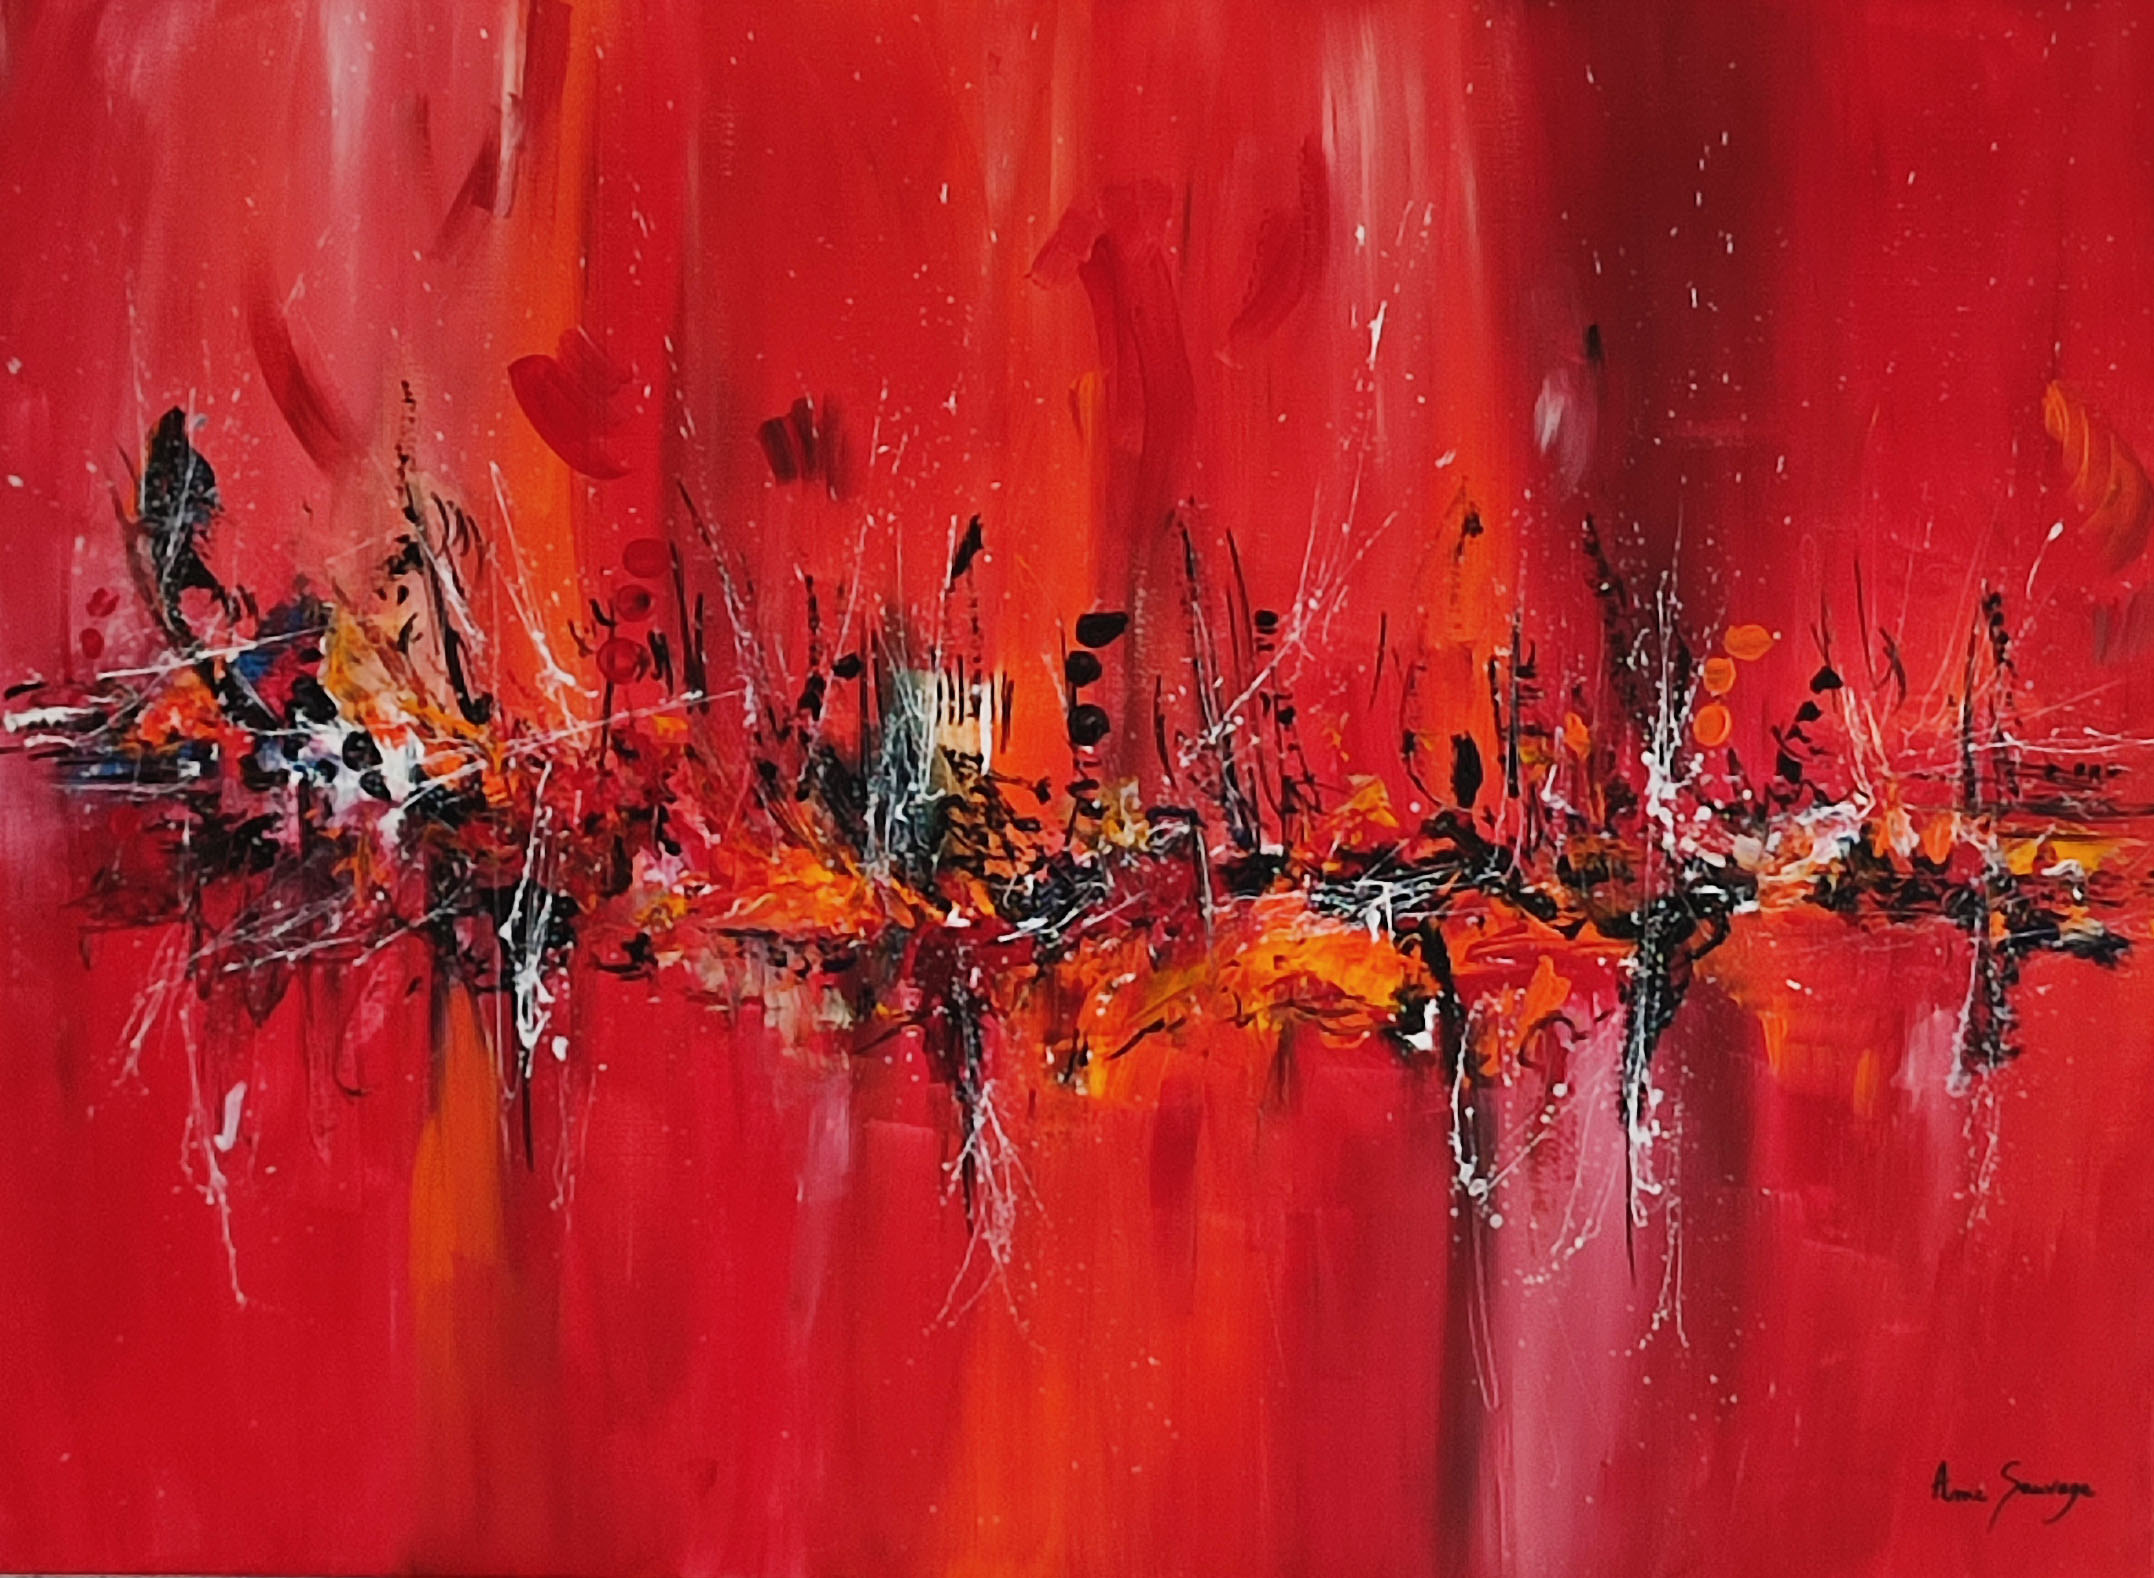 Peinture abstraite en rouge et noir de style moderne et peint à la